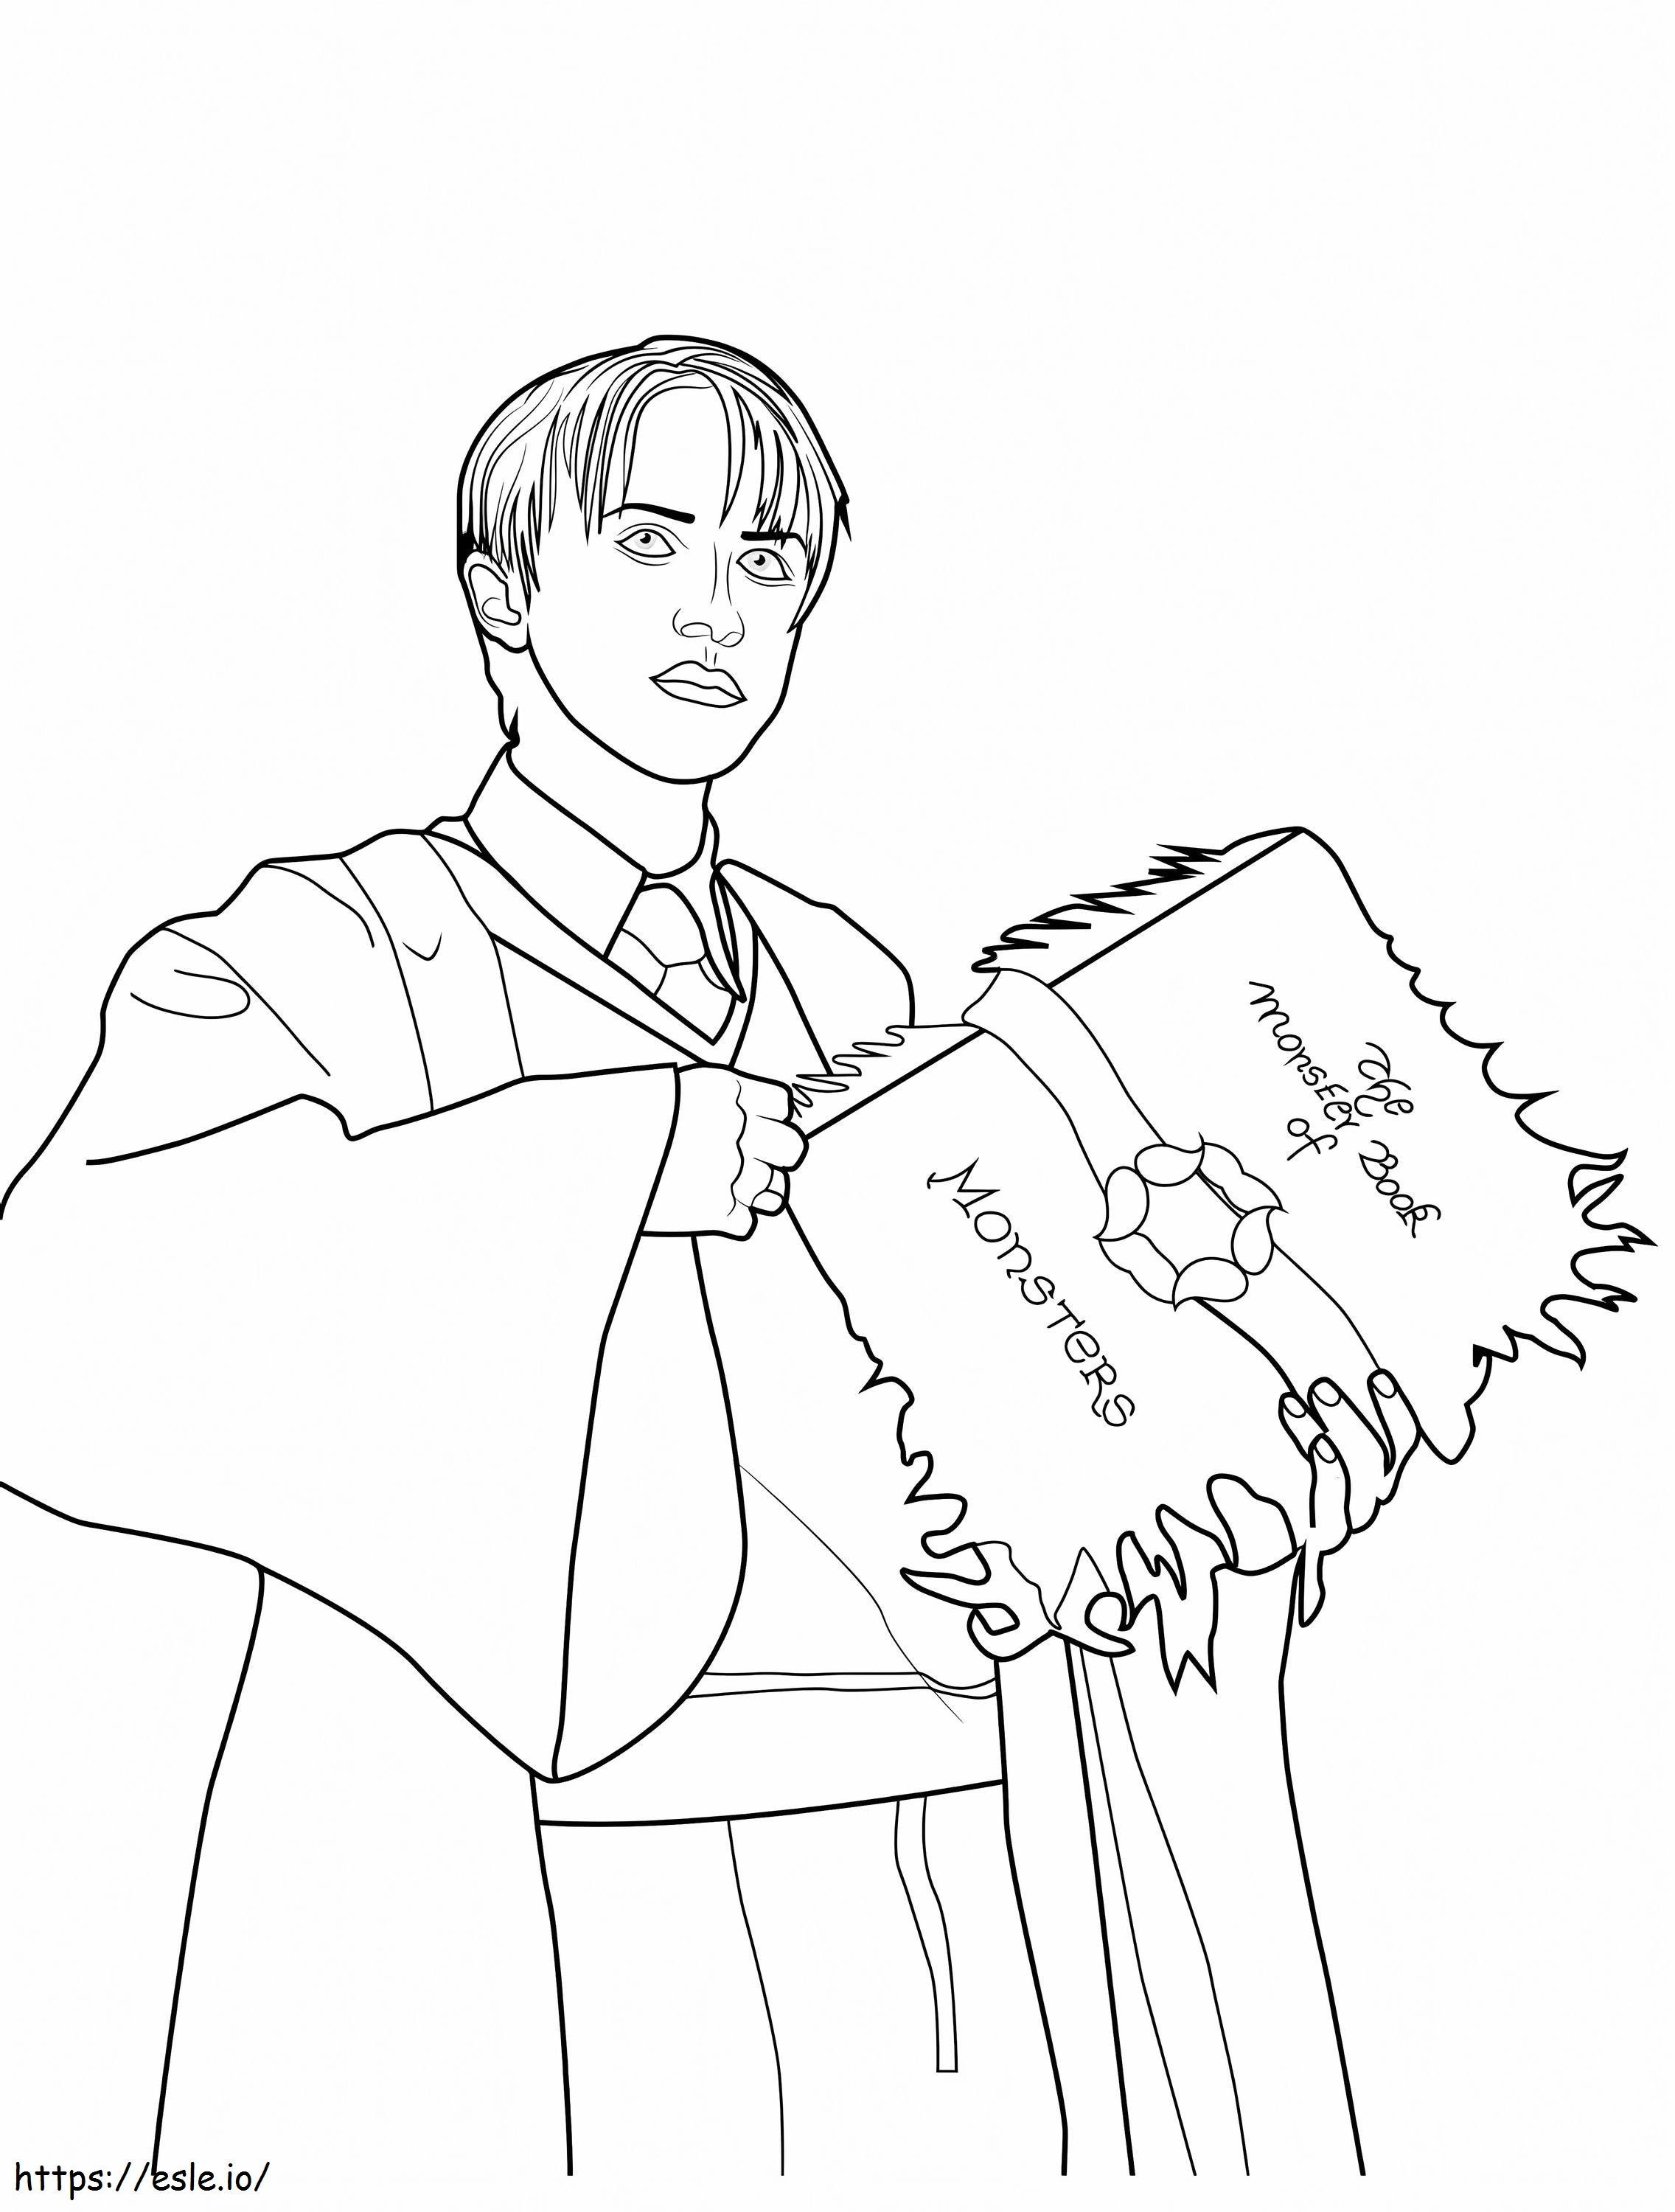 Draco Malfoy sosteniendo un libro para colorear